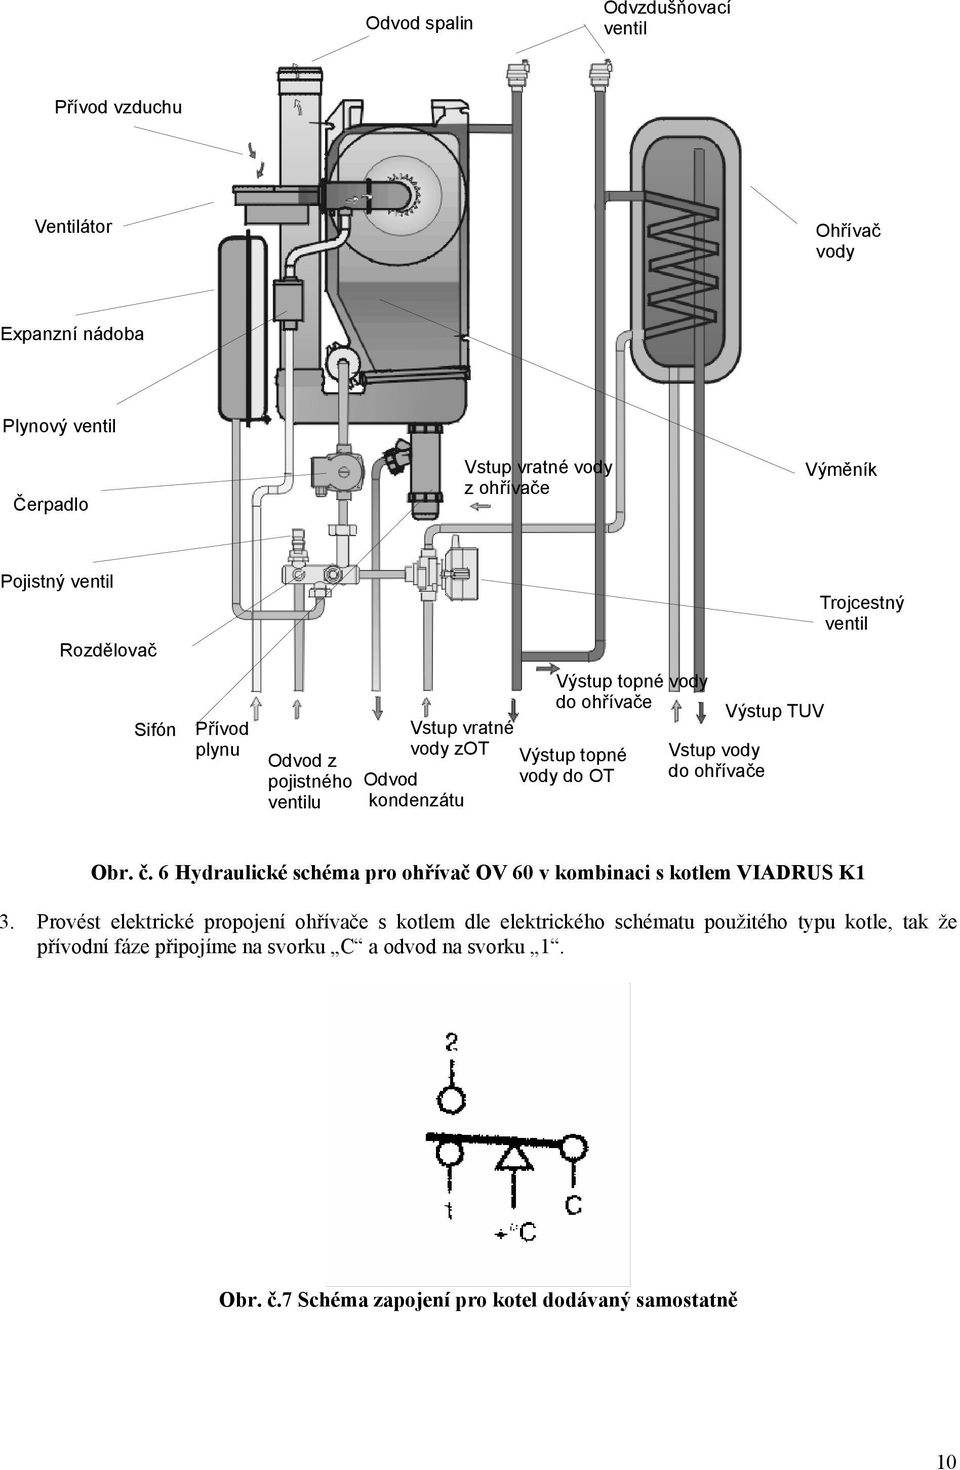 ohřívače Výstup TUV Trojcestný ventil Obr. č. 6 Hydraulické schéma pro ohřívač OV 60 v kombinaci s kotlem VIADRUS K1 3.